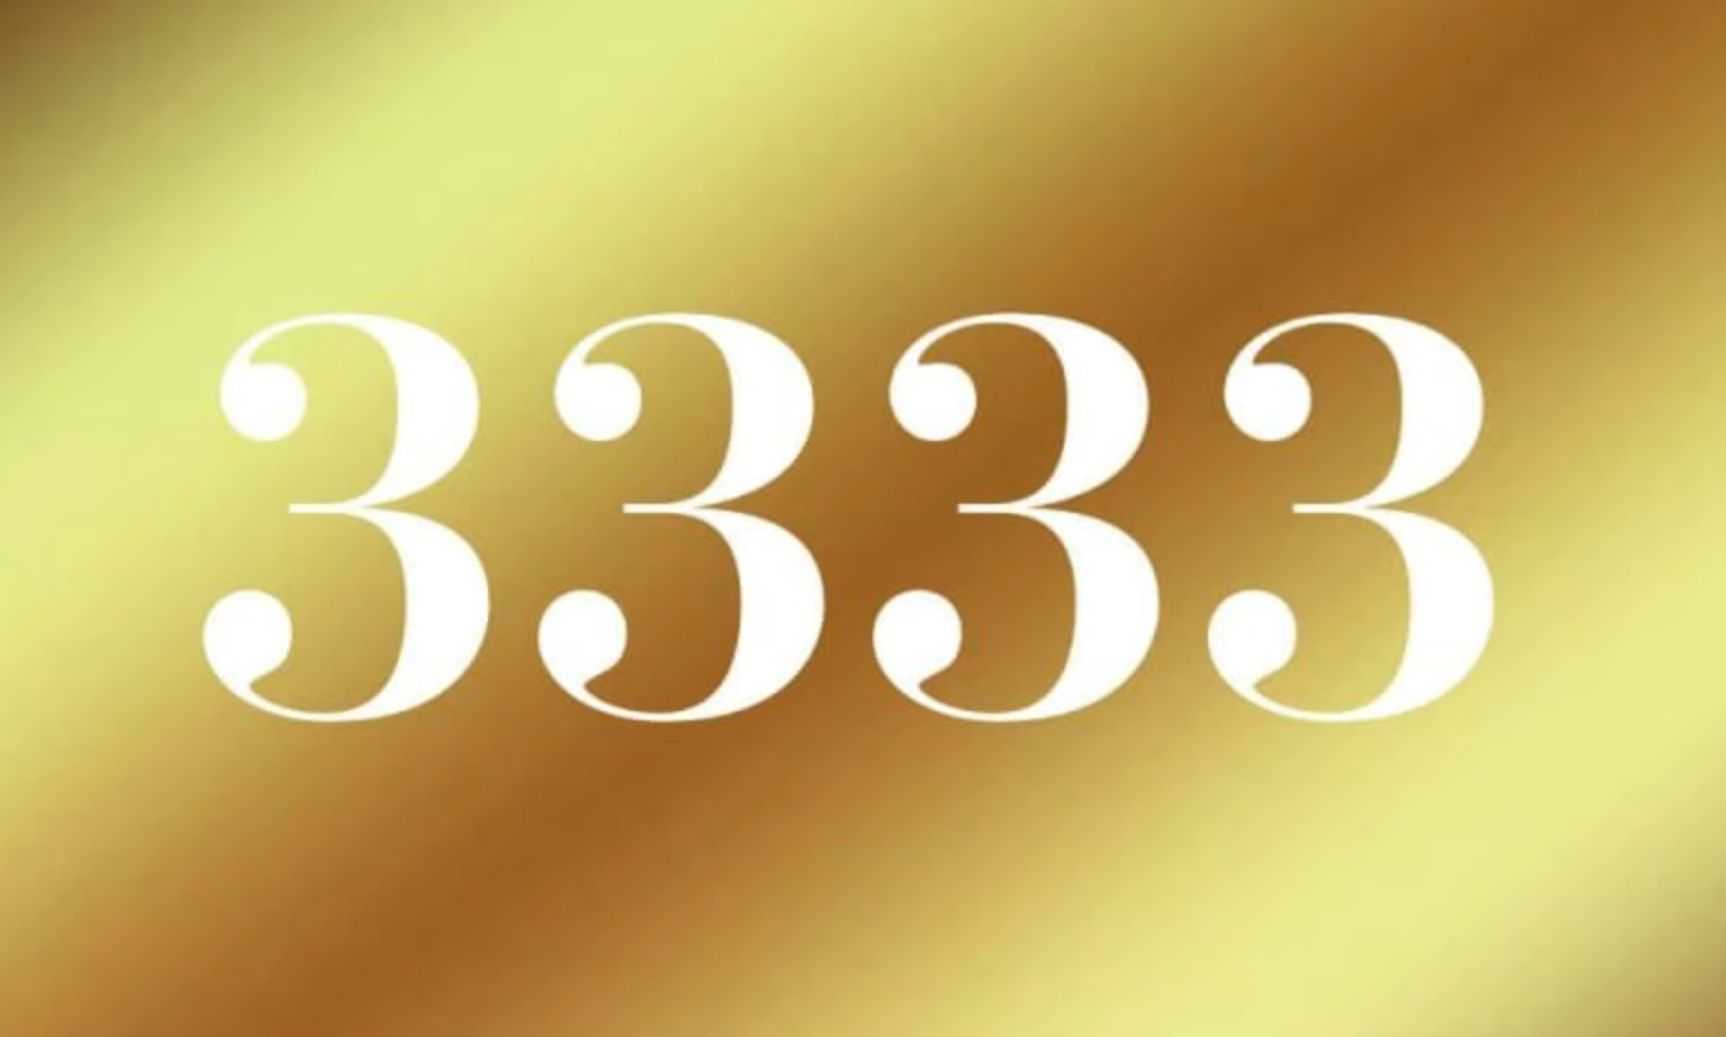 22 33 на часах — значение в ангельской нумерологии